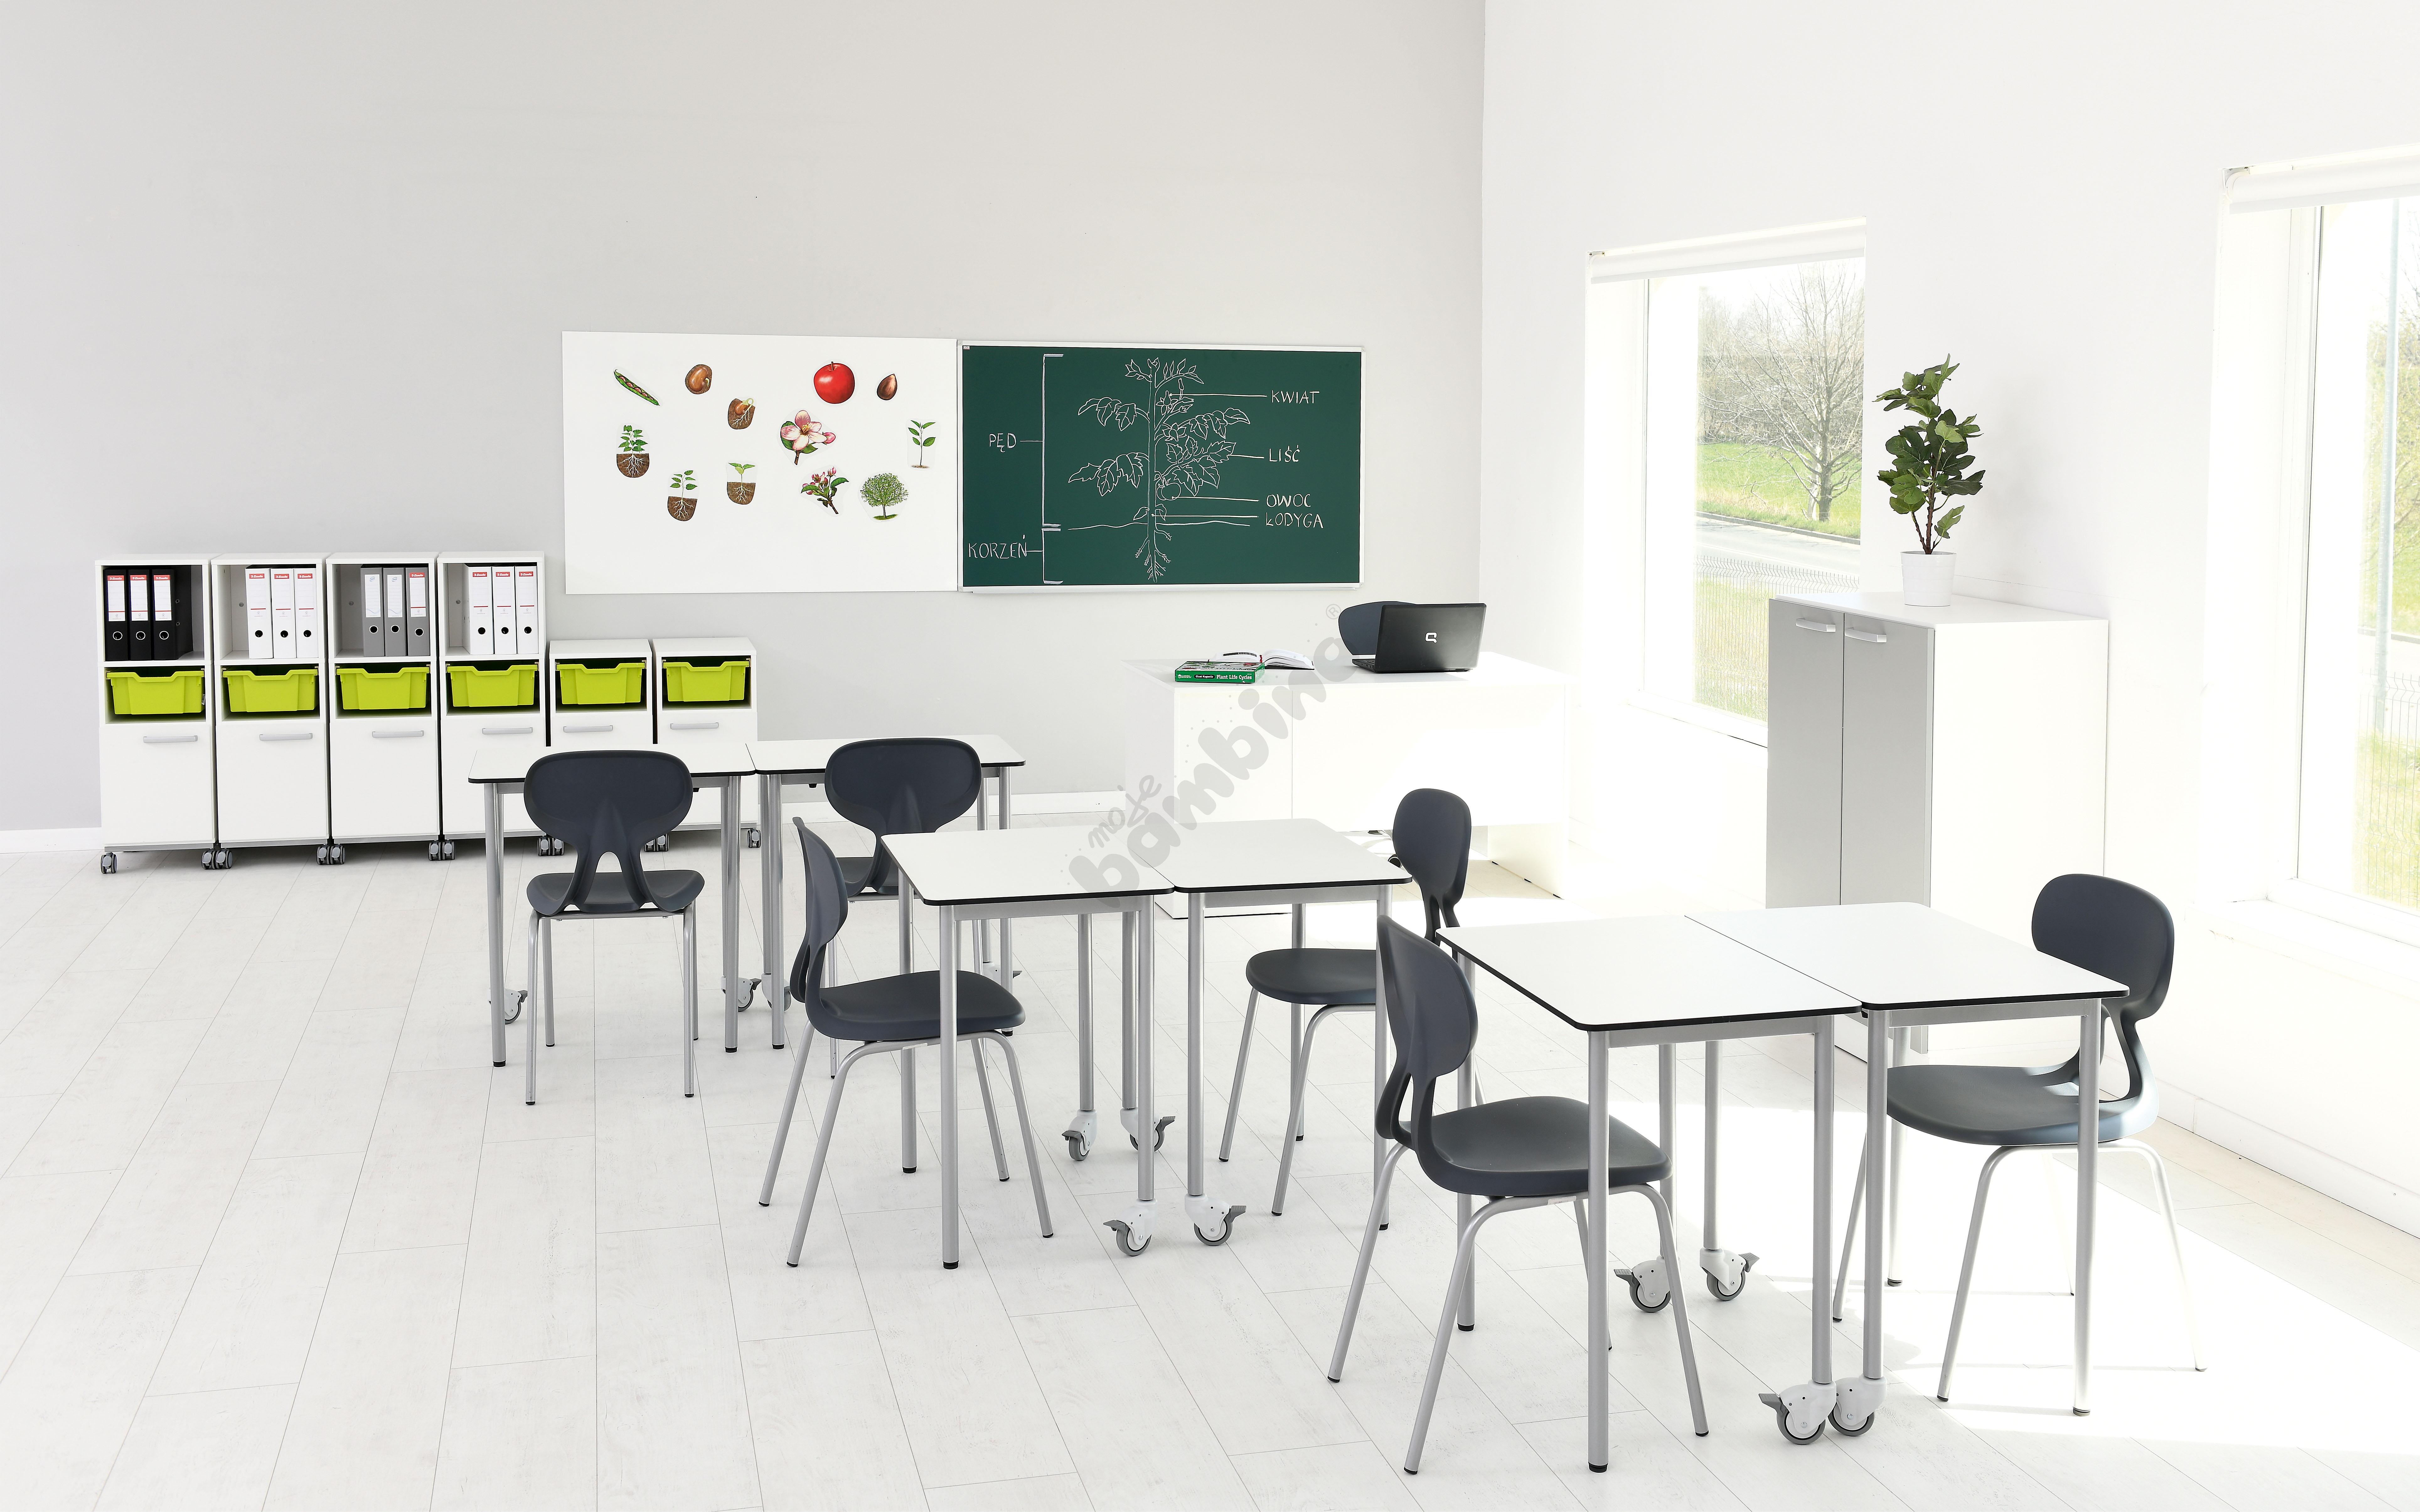 Sala szkolna z mobilnymi stołami easyMoove